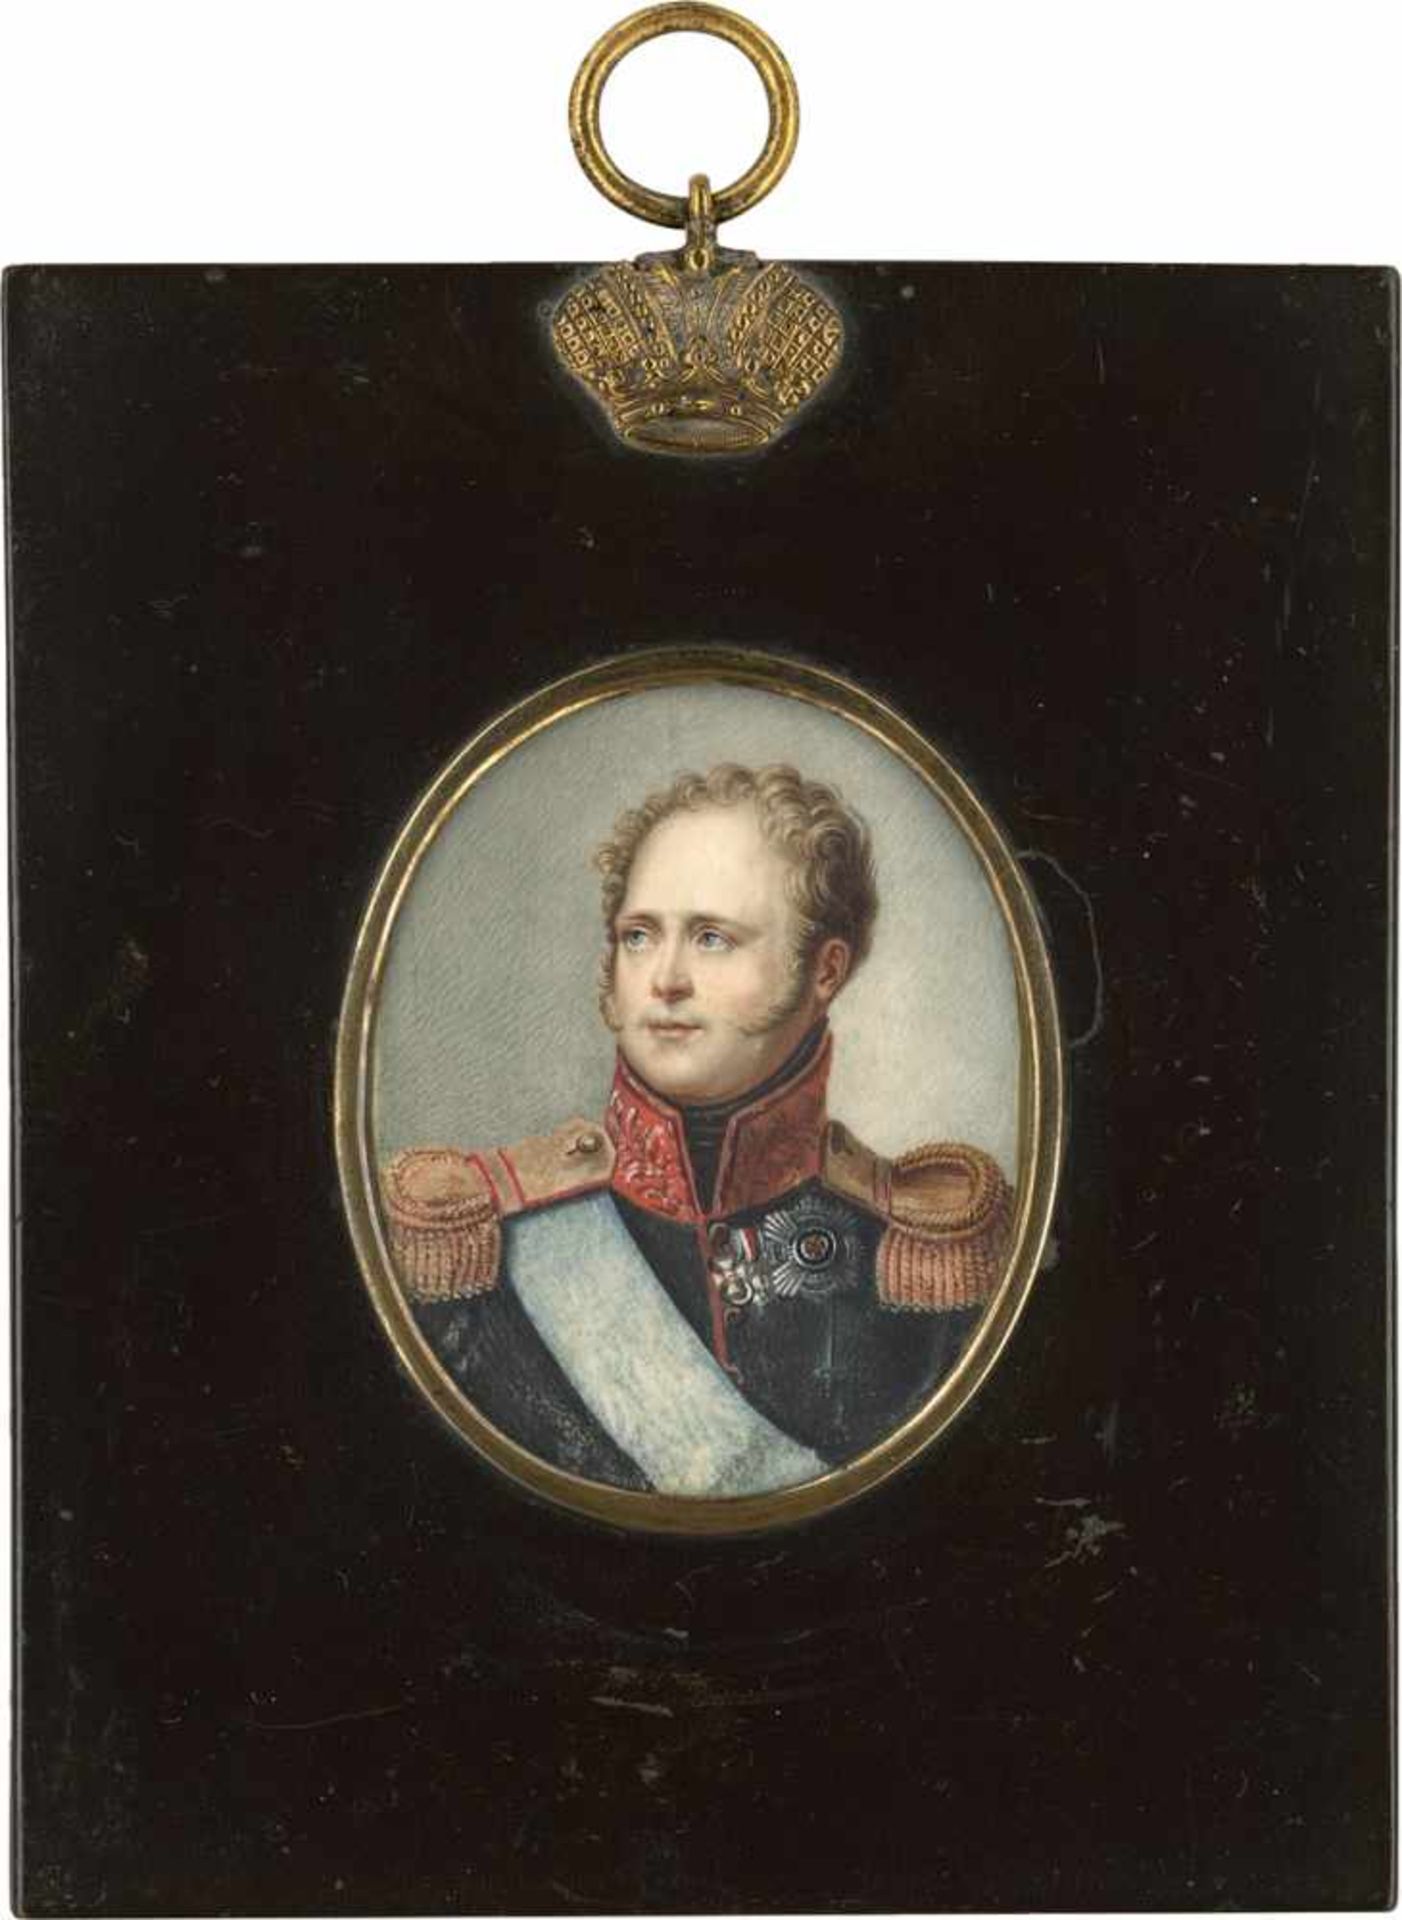 Russisch: 1. Hälfte des 19. Jahrhunderts. Bildnis des Zaren Alexander I. von Russland in Uniform mit